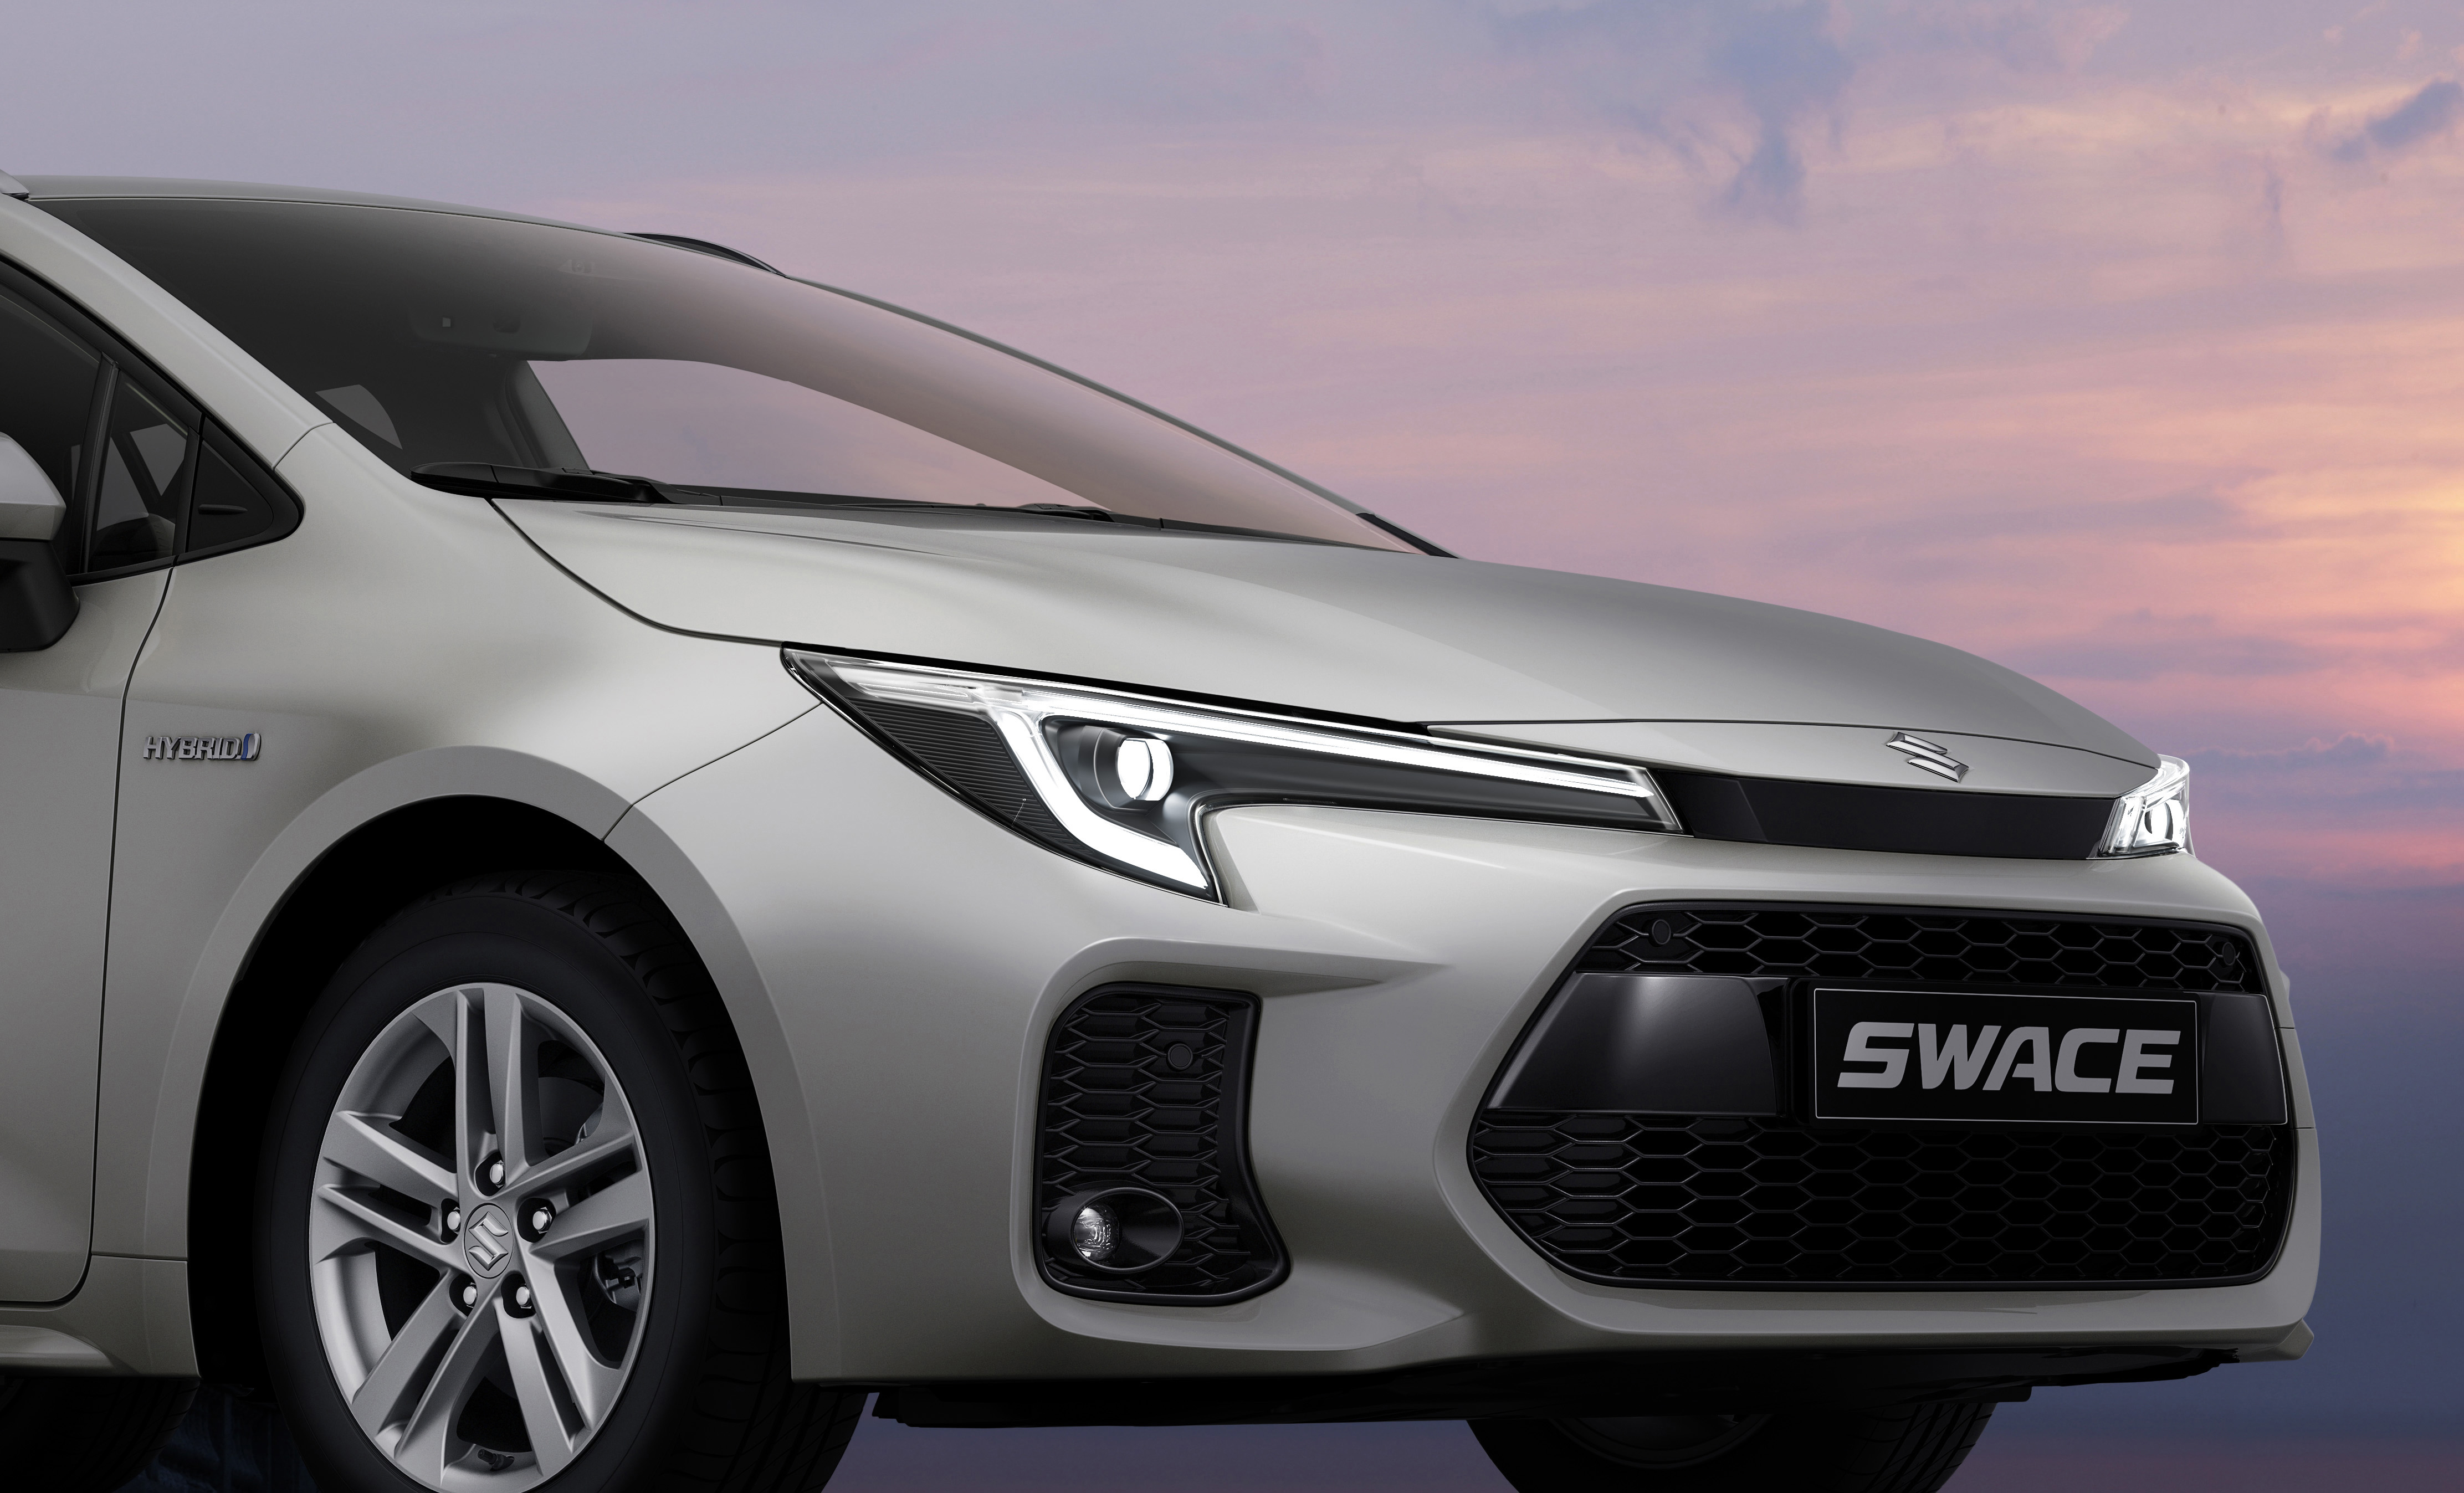 Suzuki präsentiert auf den Modellen Swace und Across ein Facelift